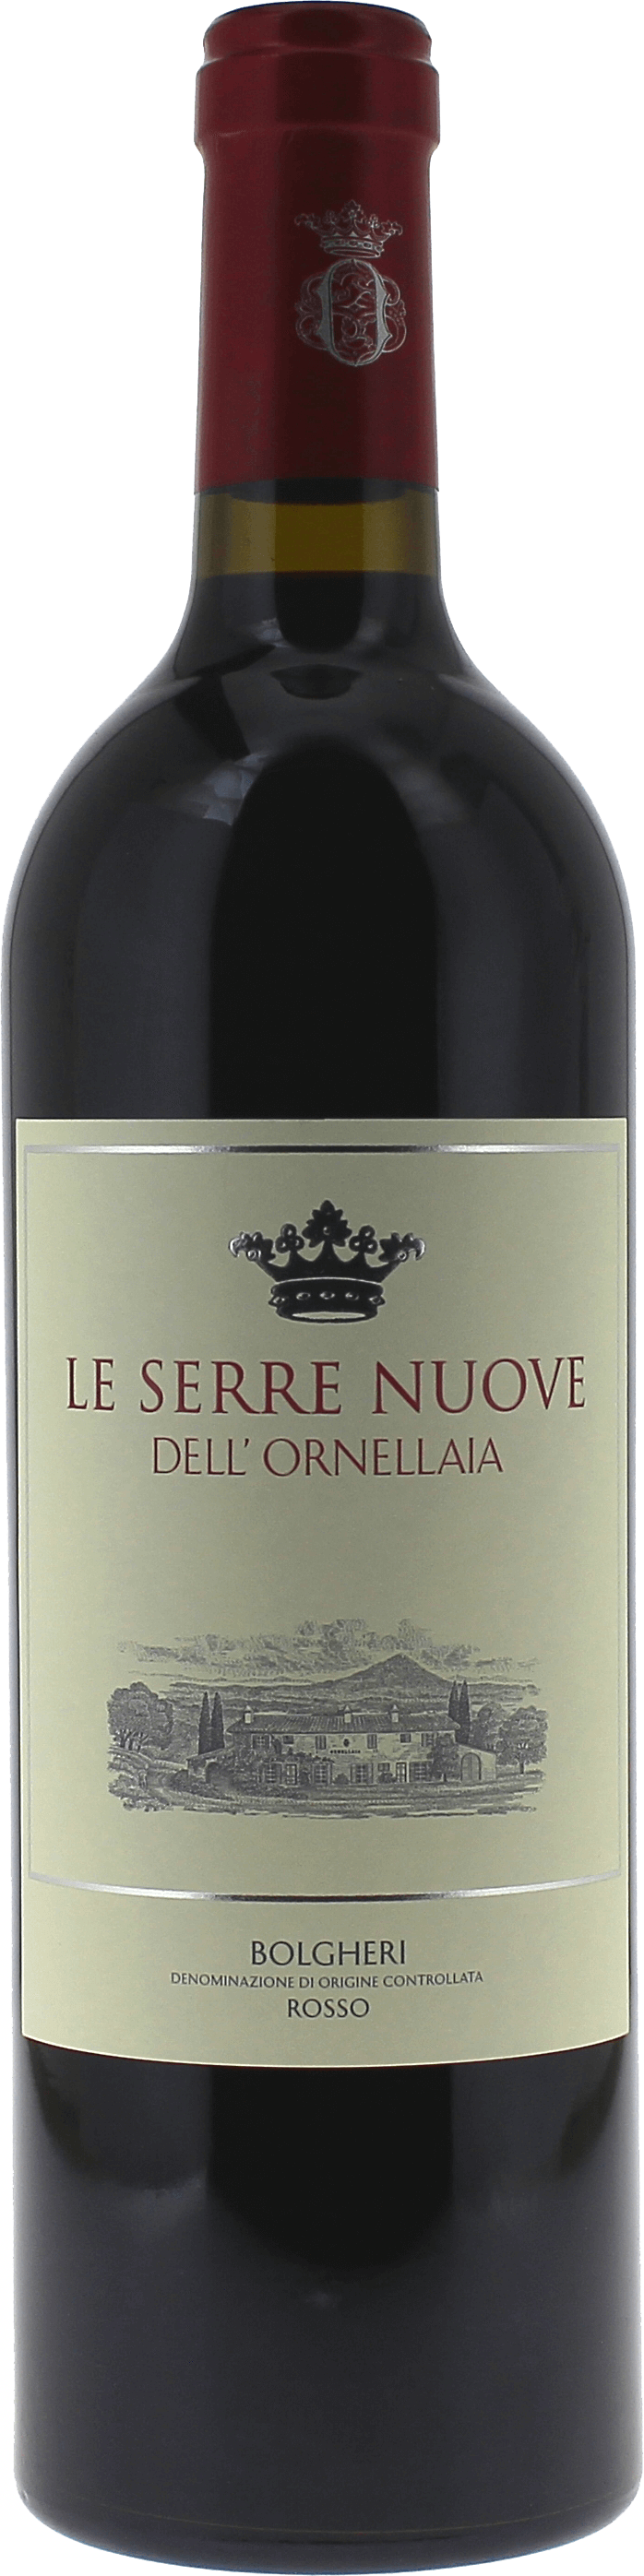 Le serre nuove dell' ornellaia  2020  Italie, Vin italien